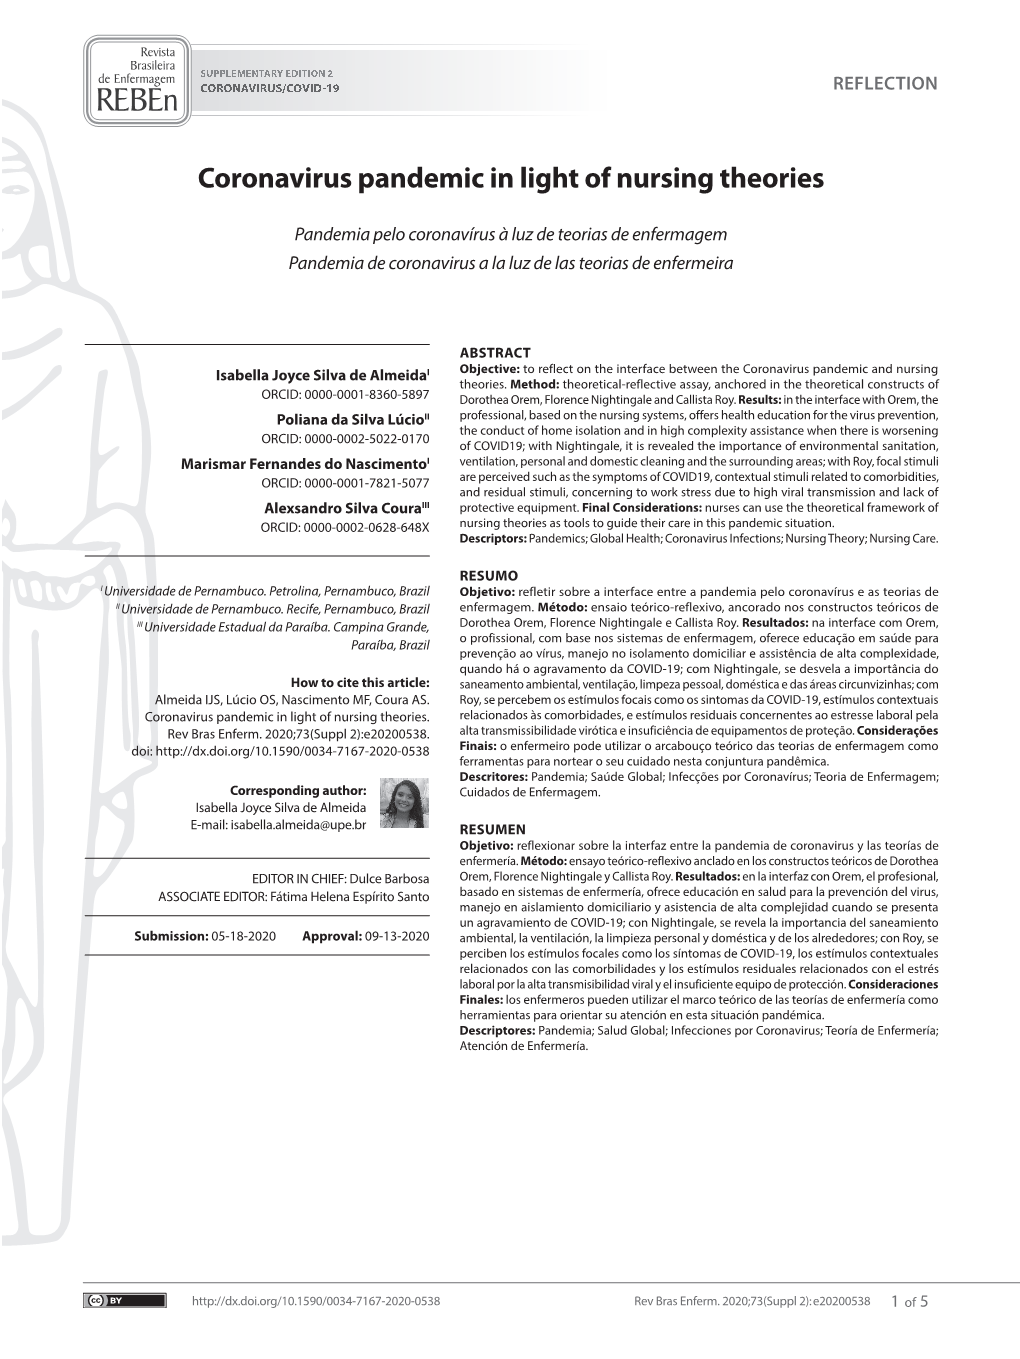 Coronavirus Pandemic in Light of Nursing Theories